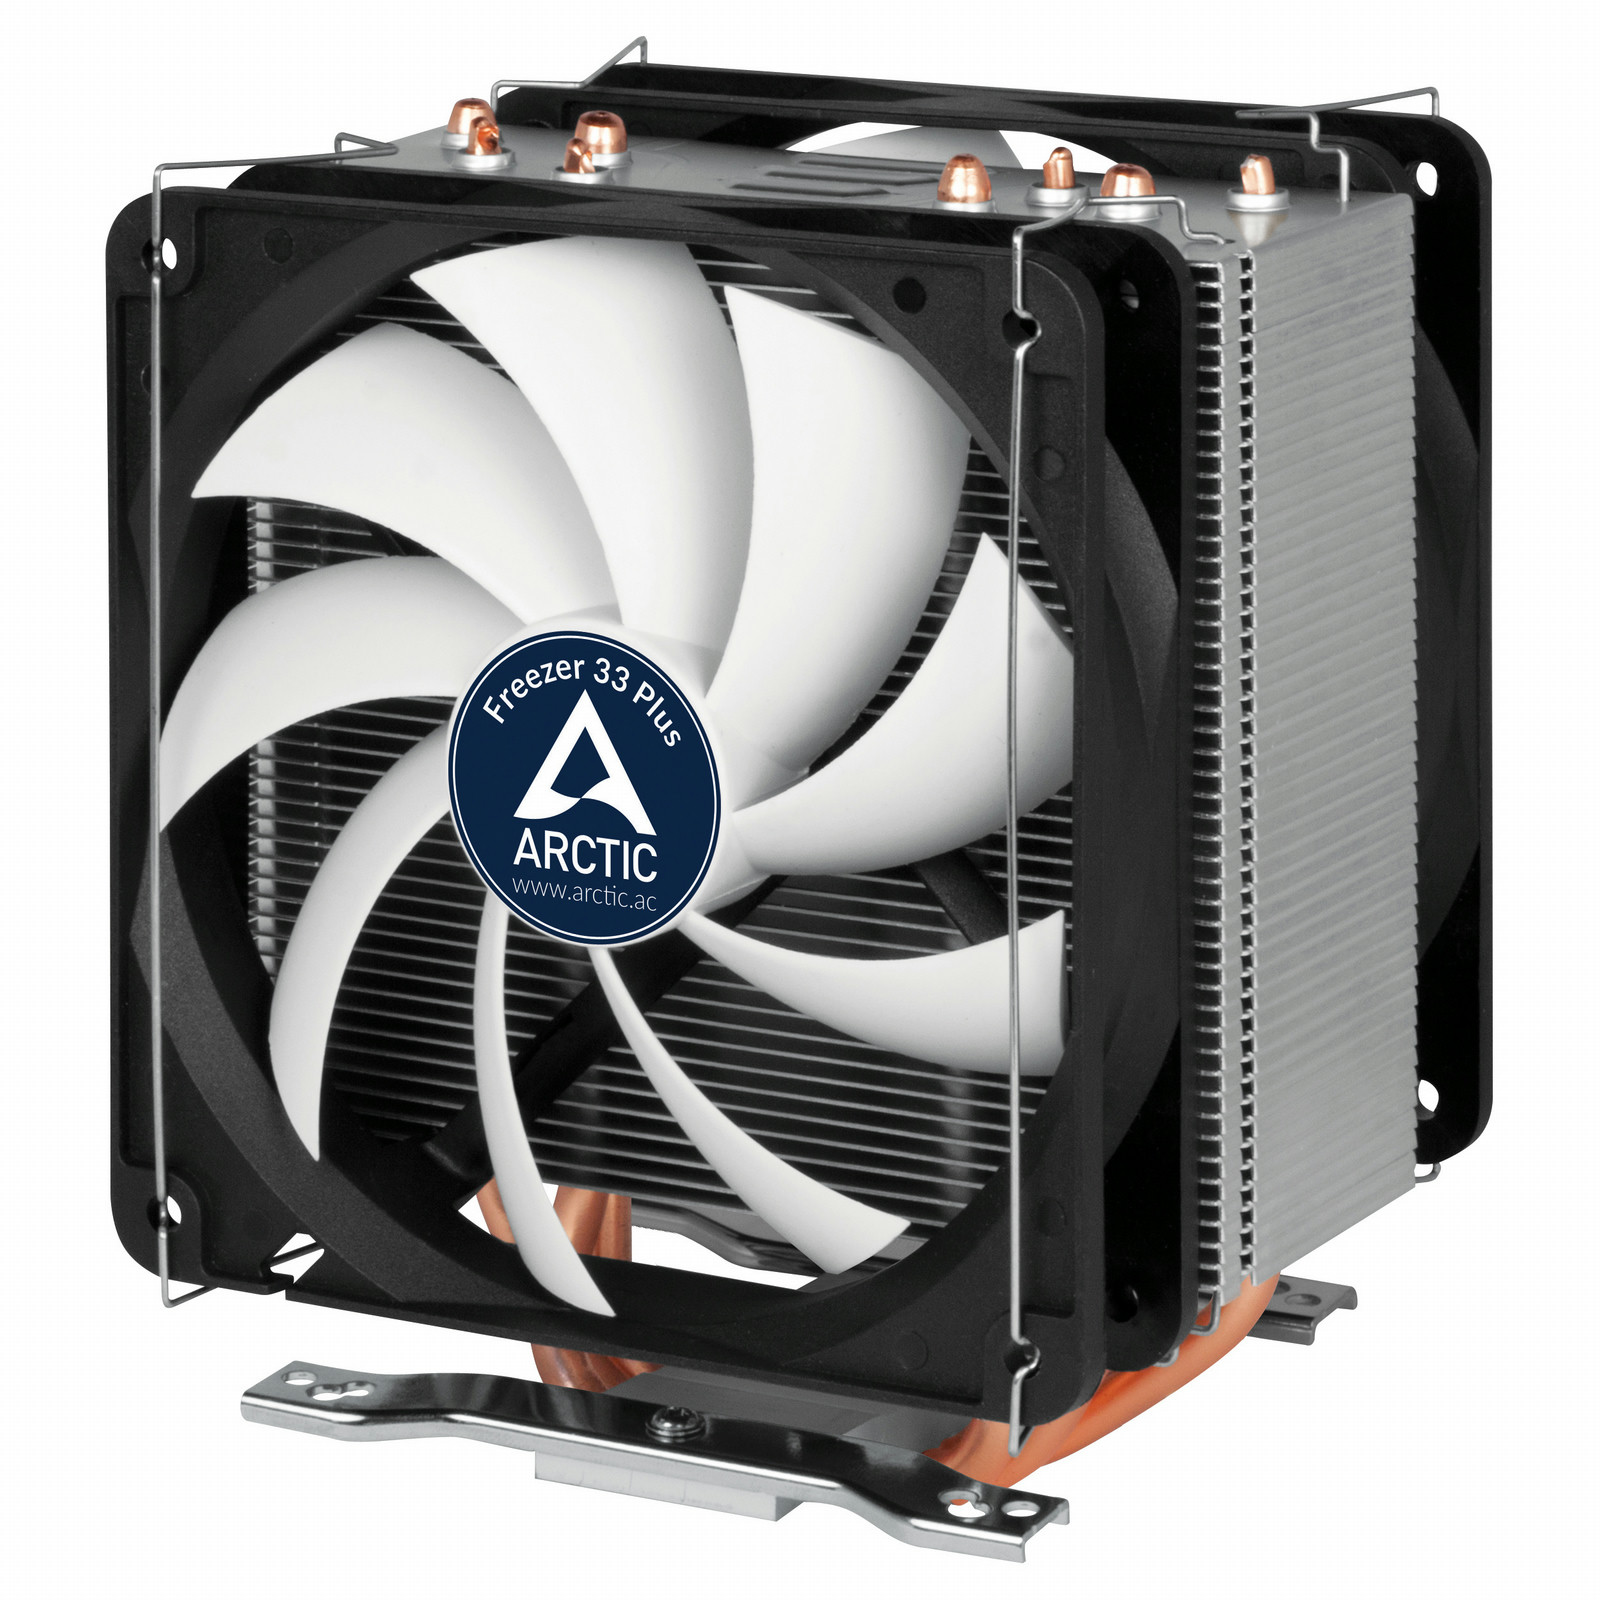 Kompatibel zu AMD AM4 und Intel 115x CPUs Kompakter semi-passiver Tower CPU-Kühler Empfohlen bis zu 130 W TDP ARCTIC Freezer 12 92 mm PWM Fan